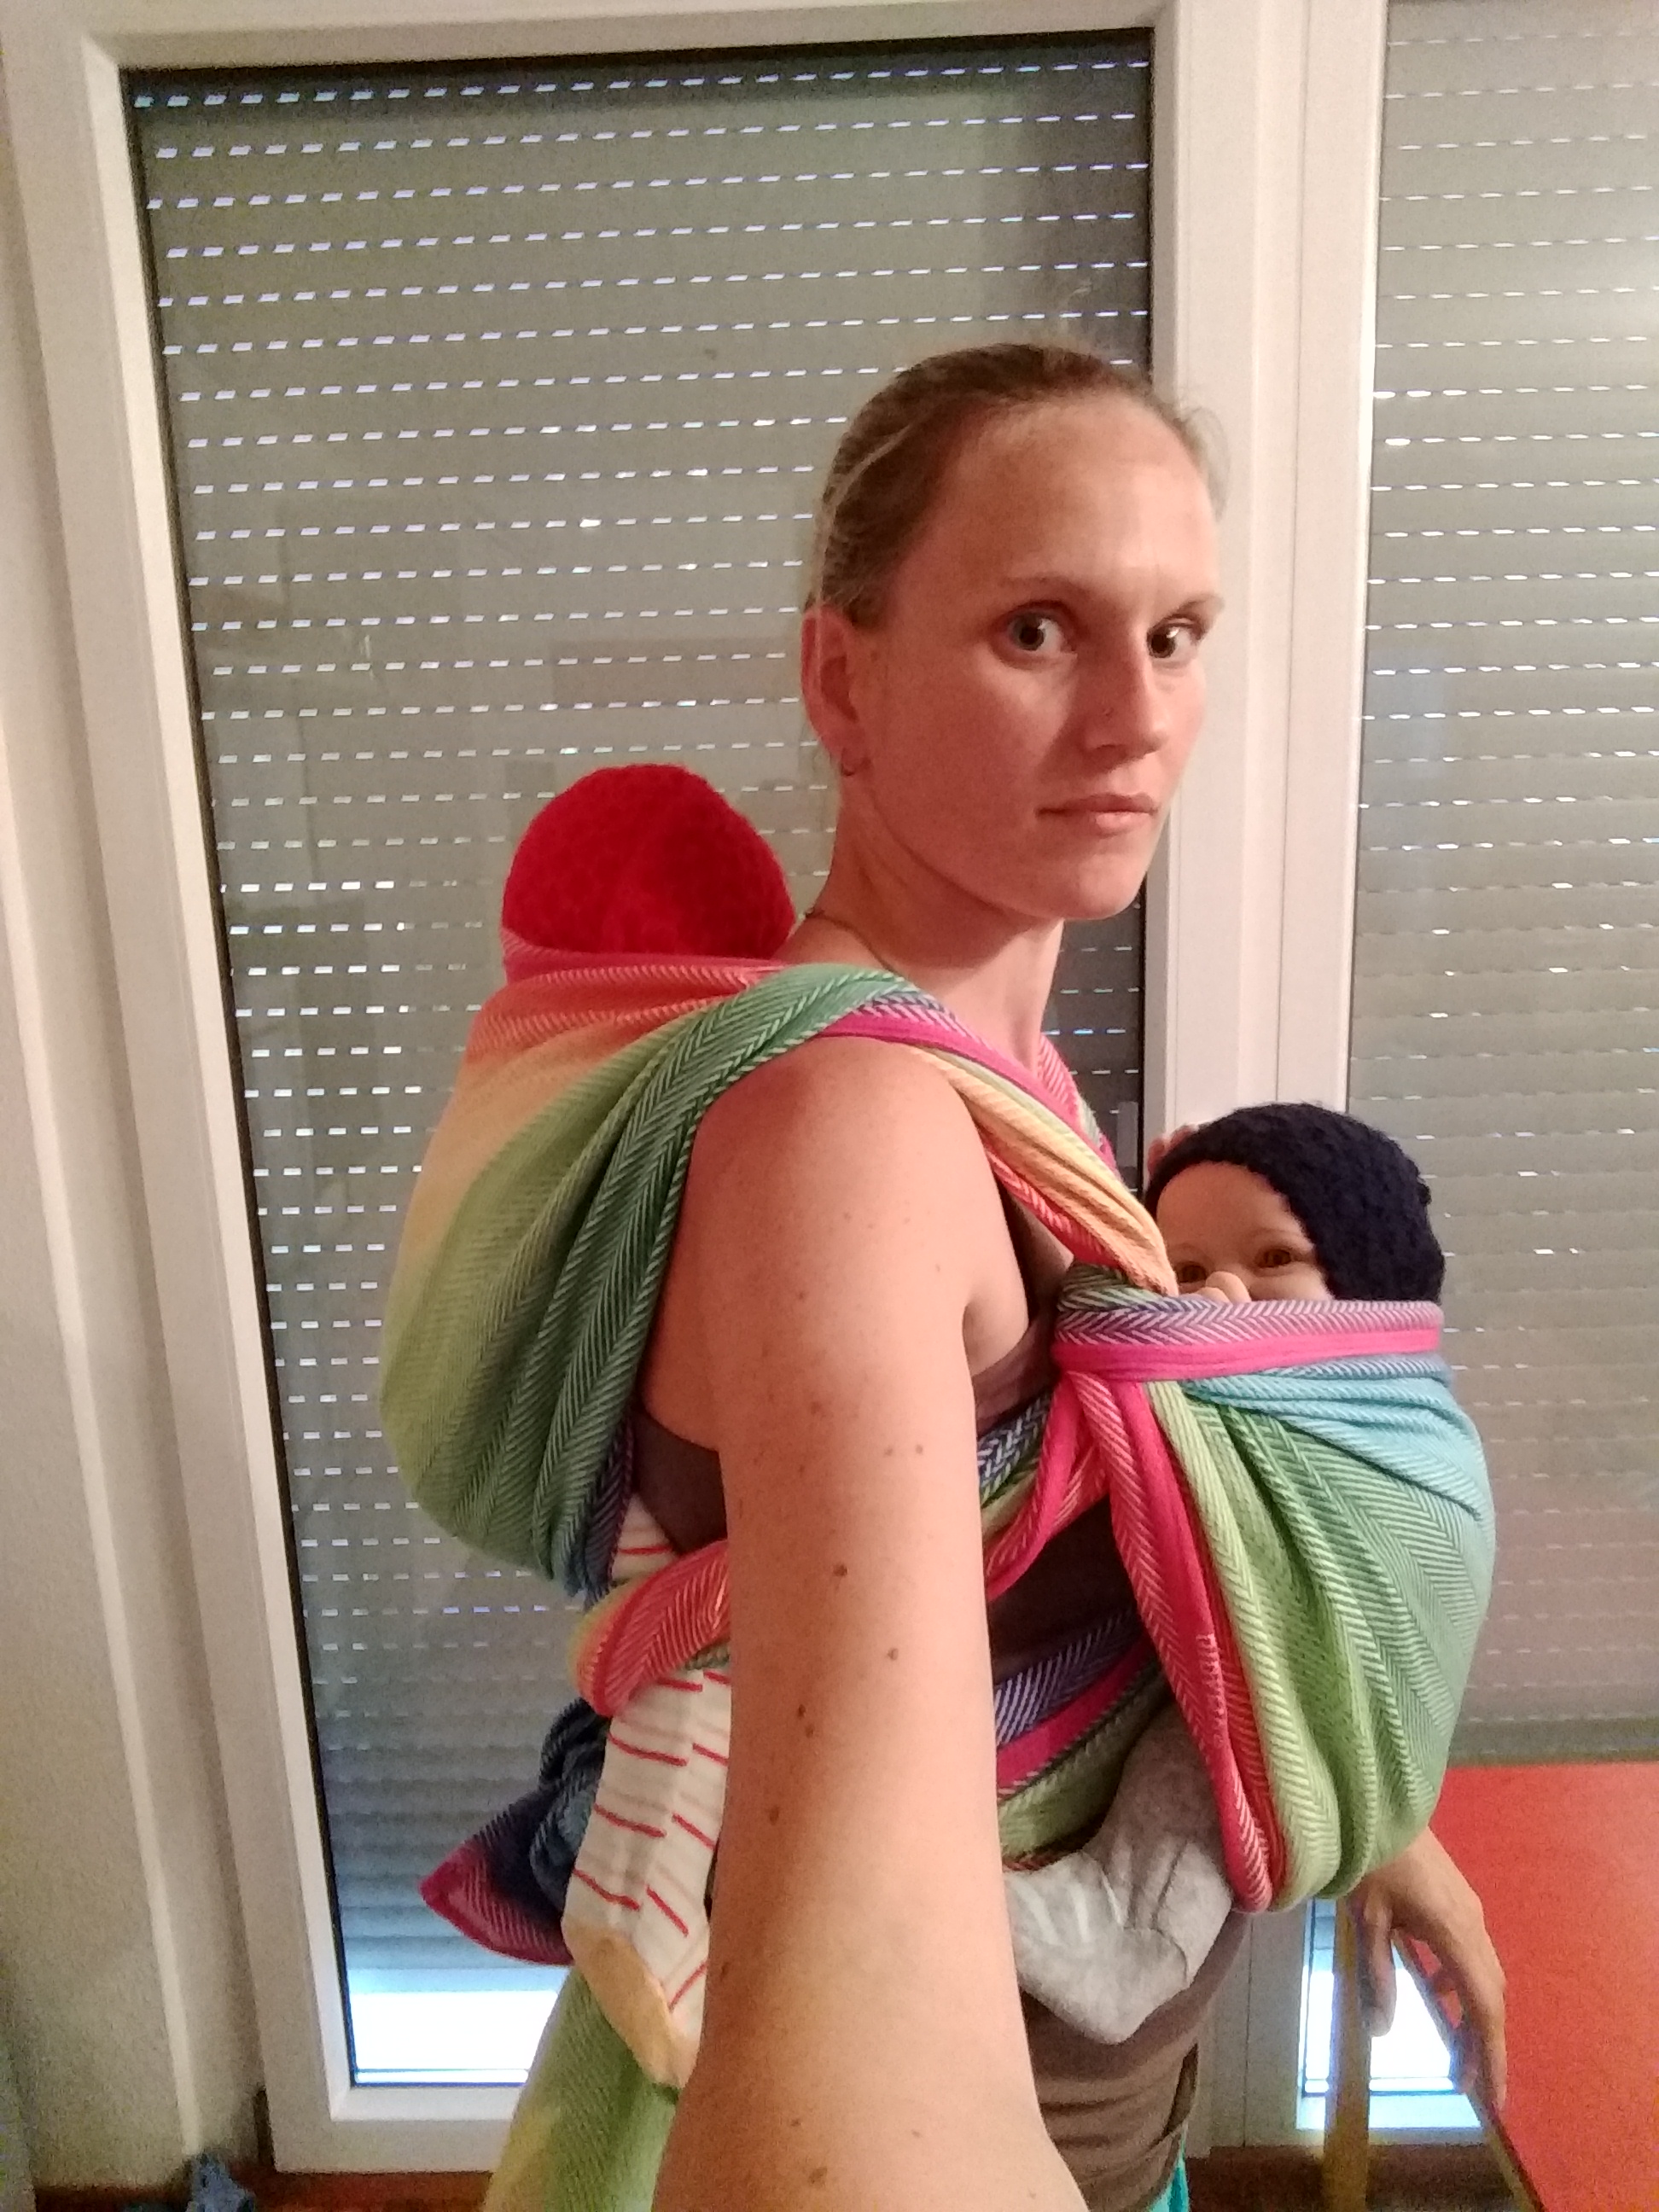 Zwillingsbindeweise mit einem Tuch - ein Baby im einfachen Rucksack auf dem Rücken, das andere vorn im Kreuz